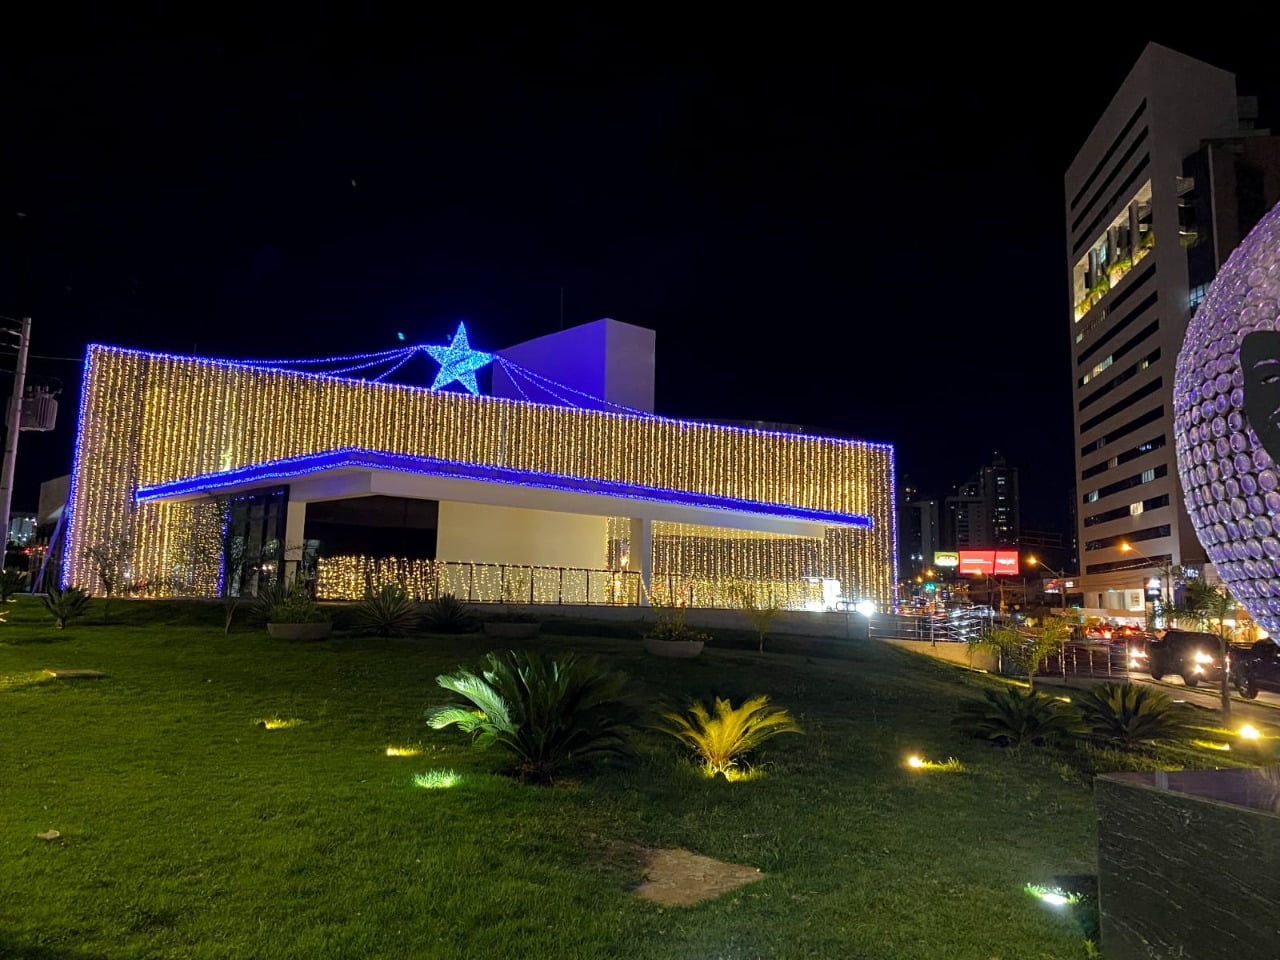 Decoração de Natal em Goiânia conta com 1 milhão de mini lâmpadas de LED: trabalho foi executado pela Comurg em 19 locais da Capital (Fotos: Luciano Magalhães/ Comurg)